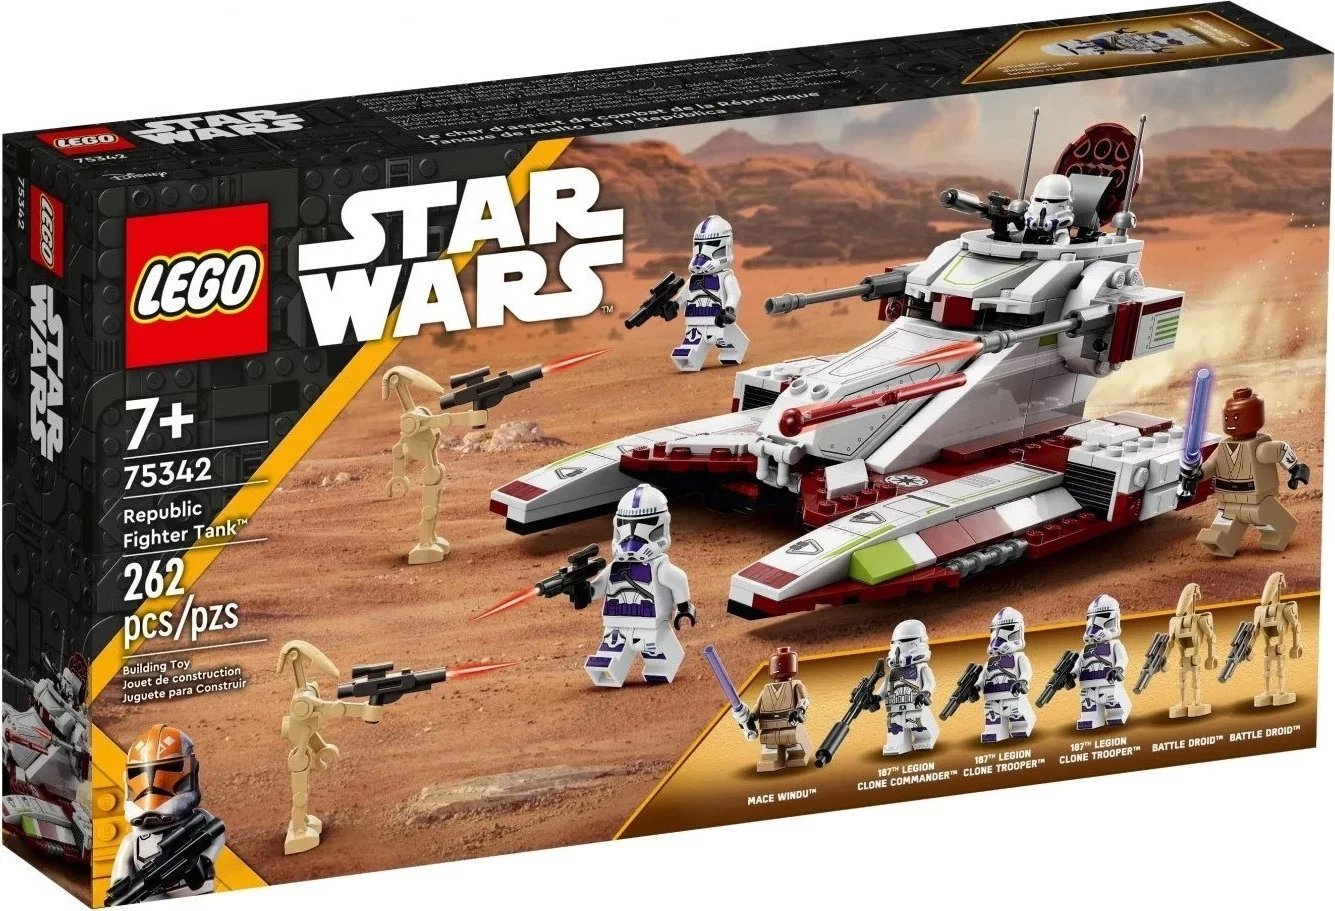 Set lodër Lego, Star Wars 75342